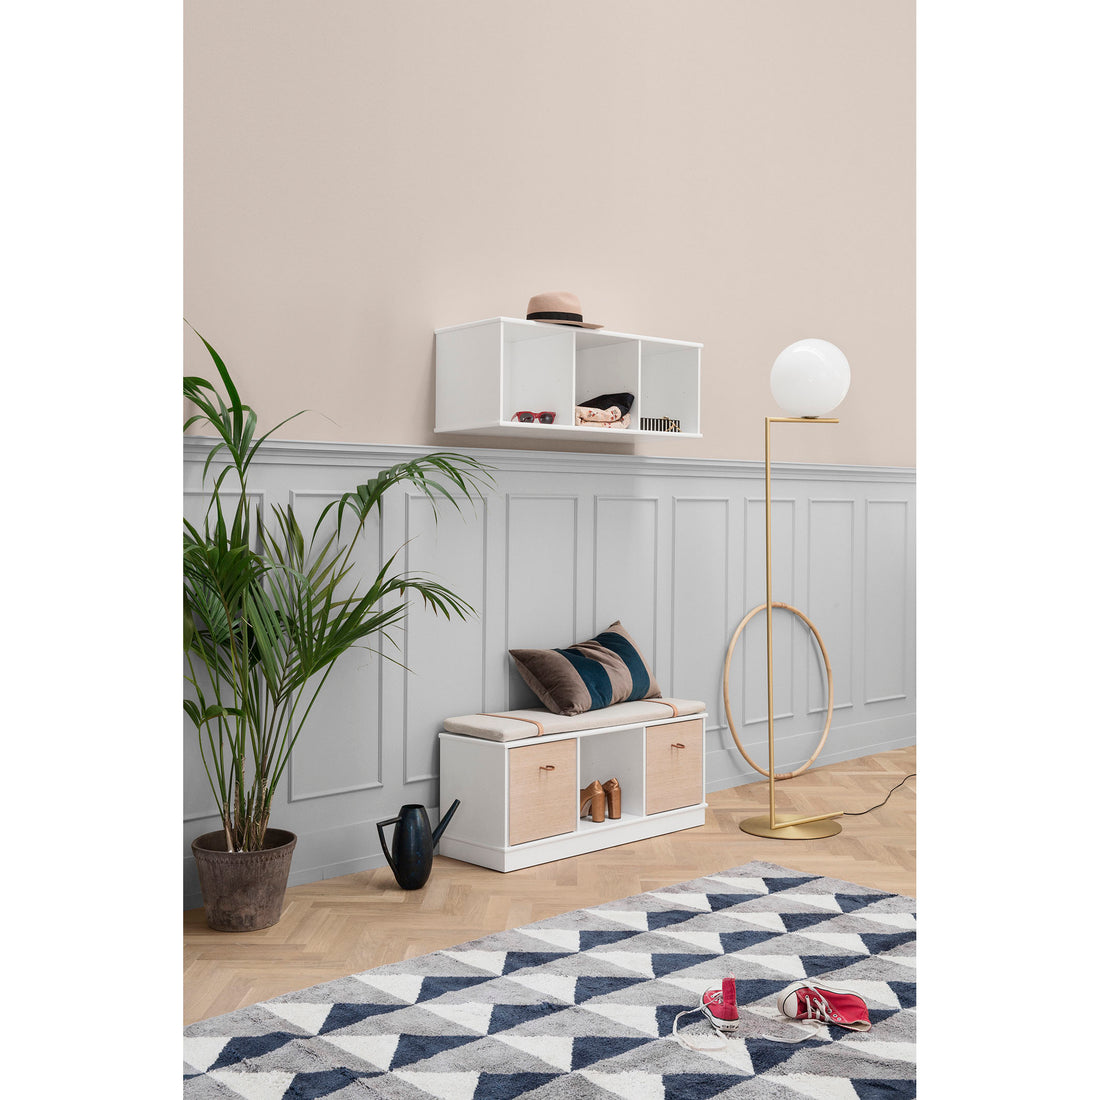 oliver-furniture-wood-shelving-unit-5x1-horizontal-shelf-with-base- (3)